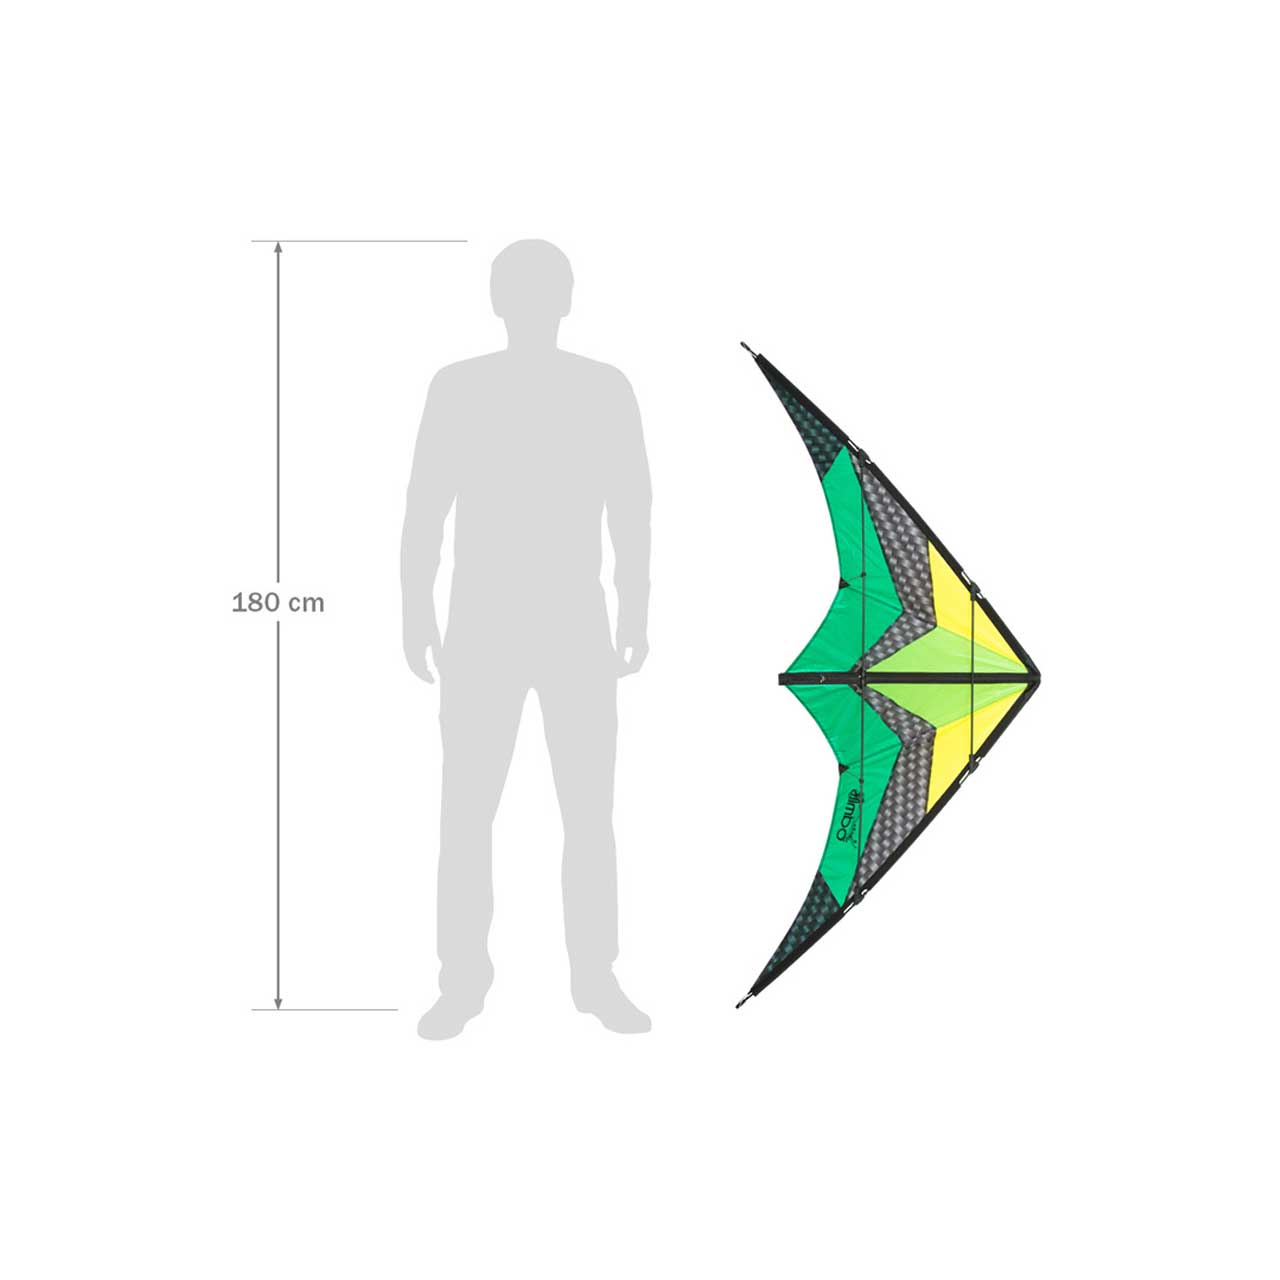 Invento HQ Kite Limbo 2 Emerald – Größenvergleich